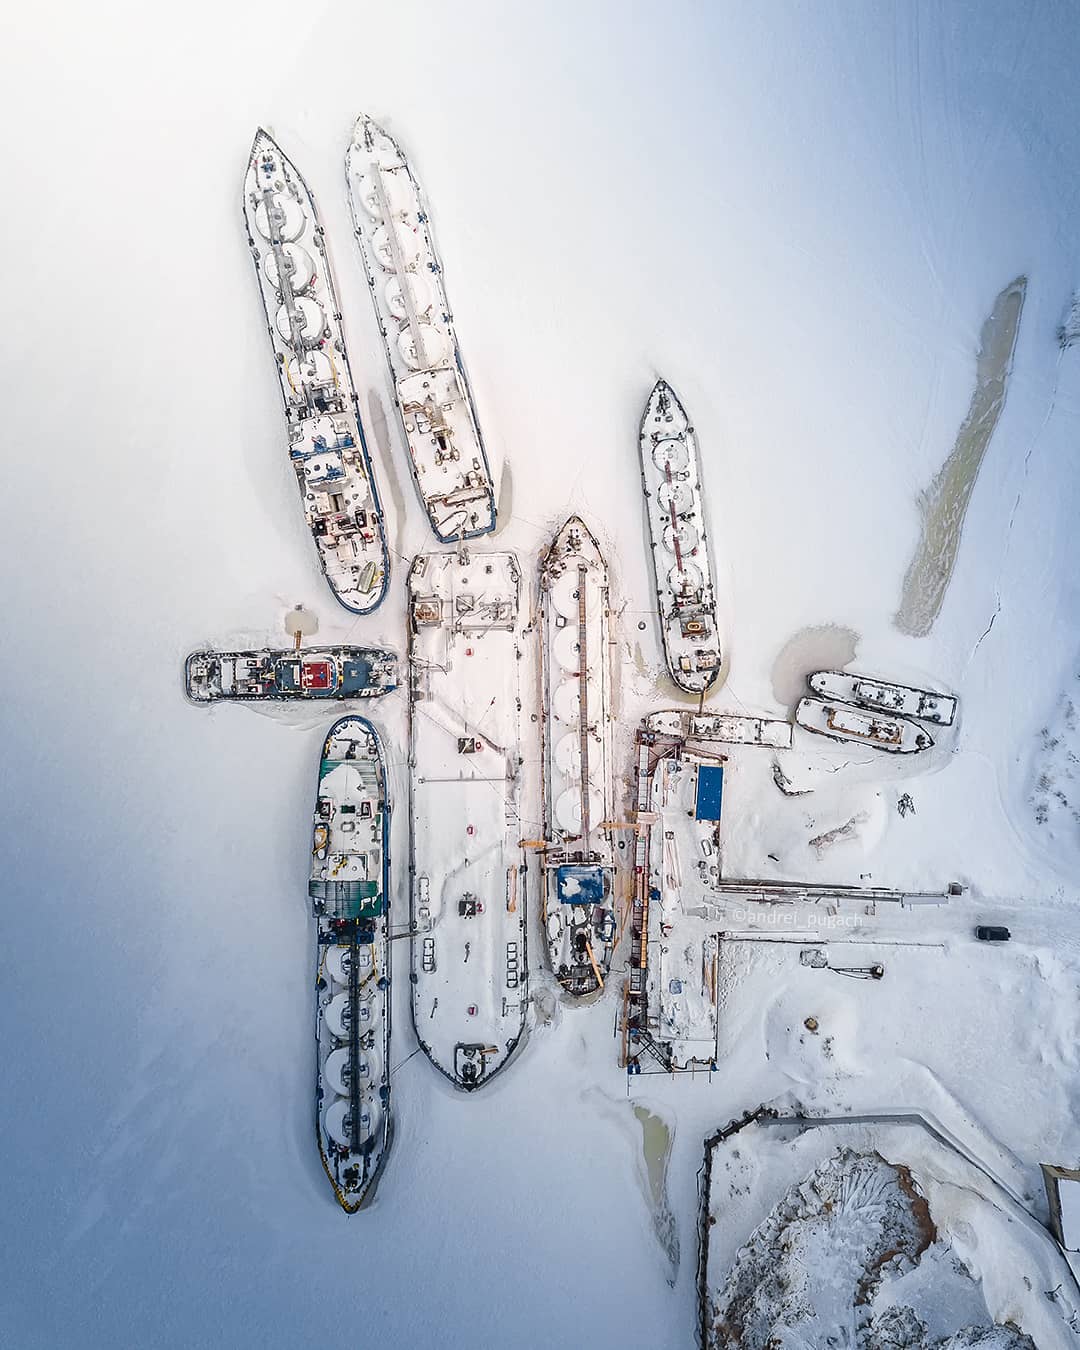 Впечатляющие аэрофотоснимки от Андрея Пугача